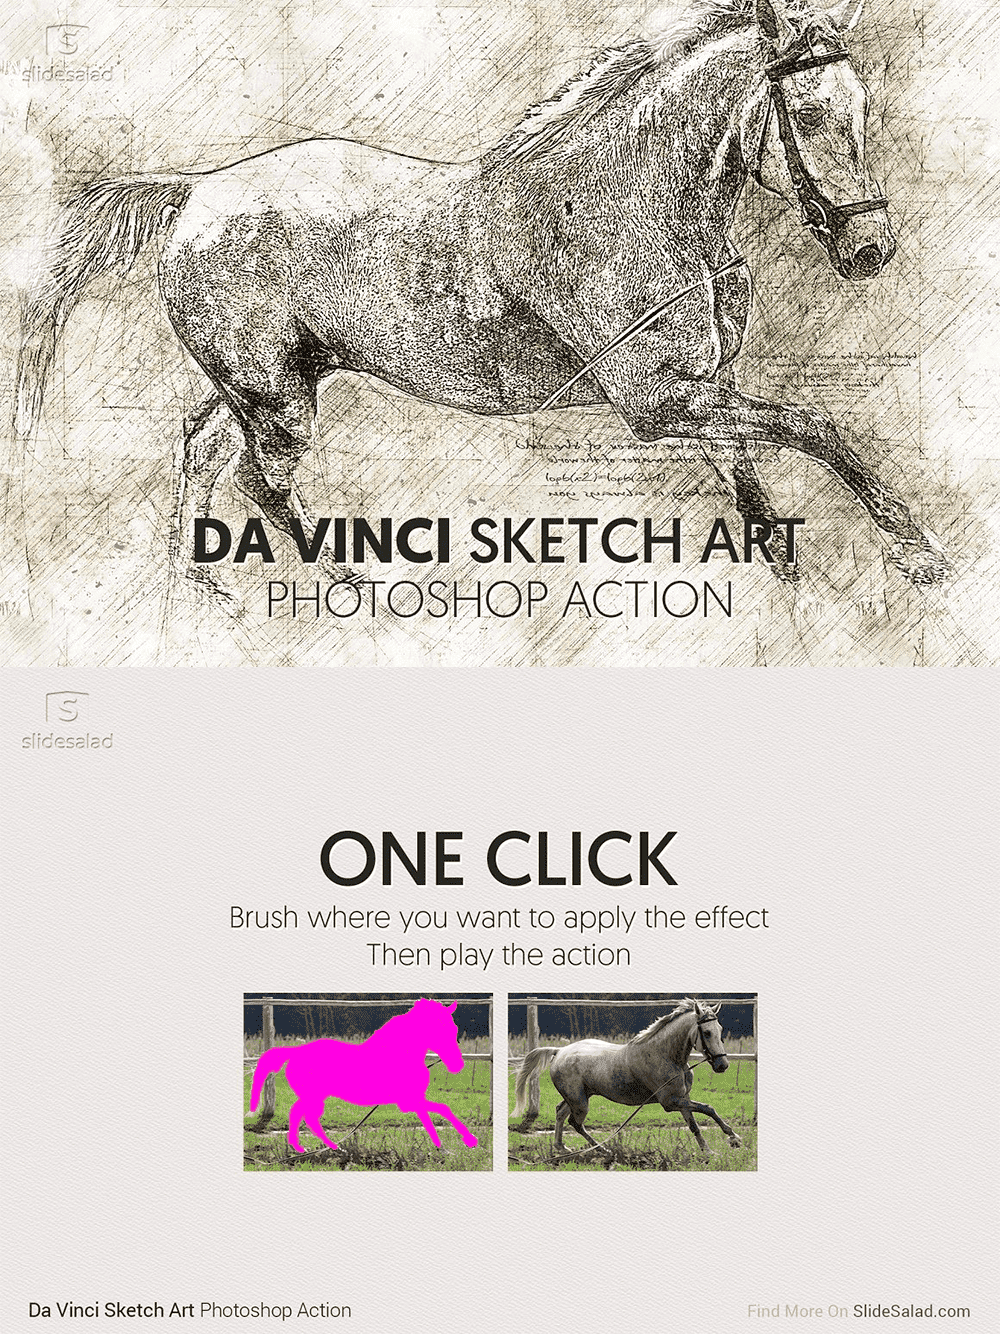 Da Vinci sketch art photoshop action, picture for pinterest 1000x1334.